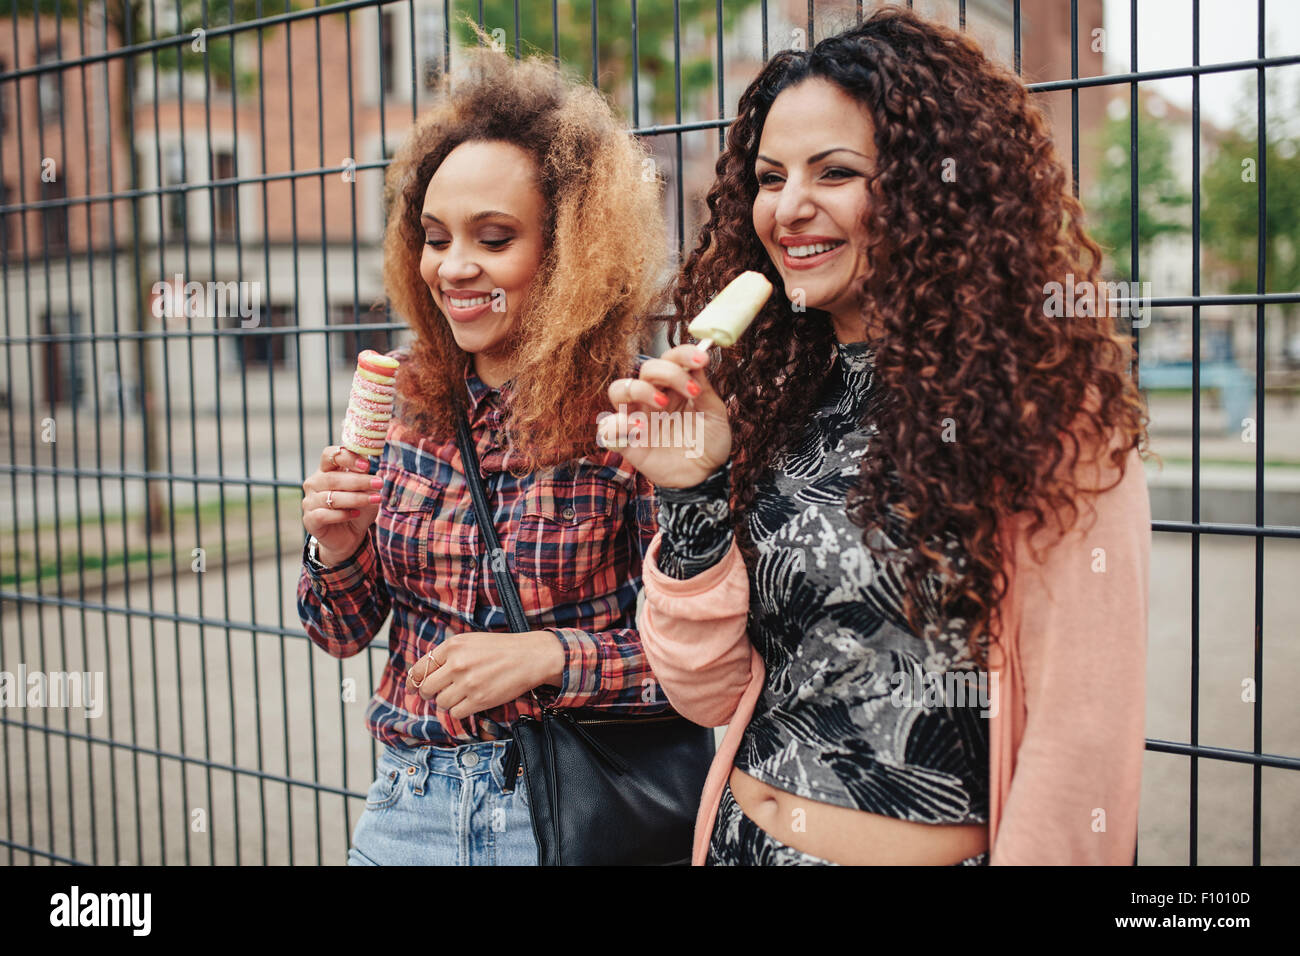 Cheerful young girls eating candy ice cream. Deux jeunes femmes se tenant debout contre une clôture, souriant à l'extérieur. Banque D'Images